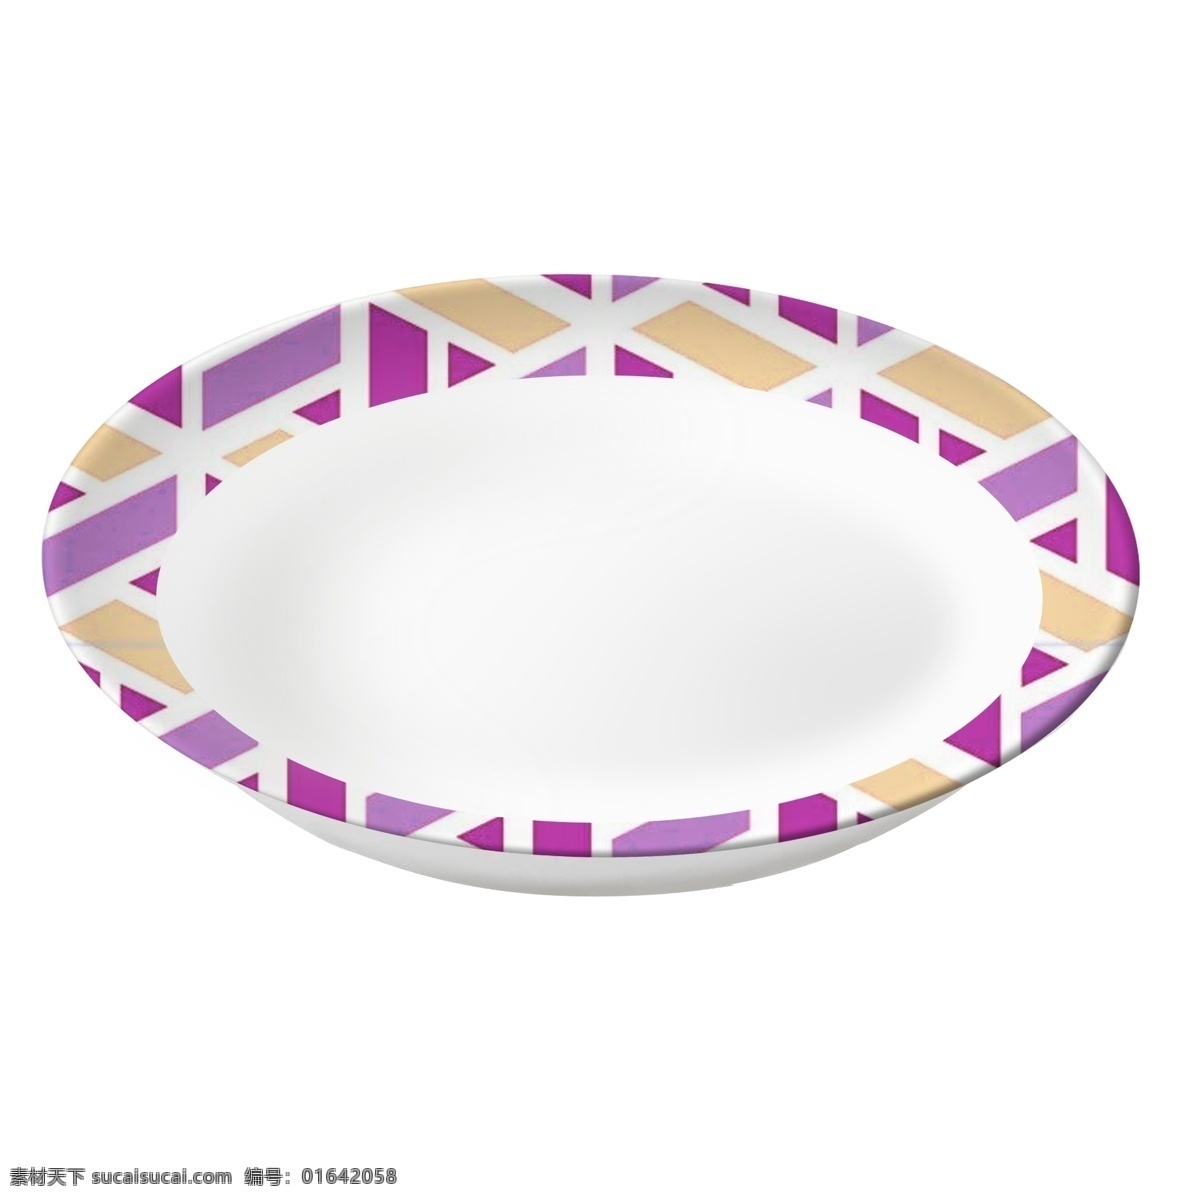 盘子 实物 底座 不规则 花纹 装饰 盘 有底座 装饰盘 紫色纹理图案 汤盘 菜盘 水果点心盘 餐具